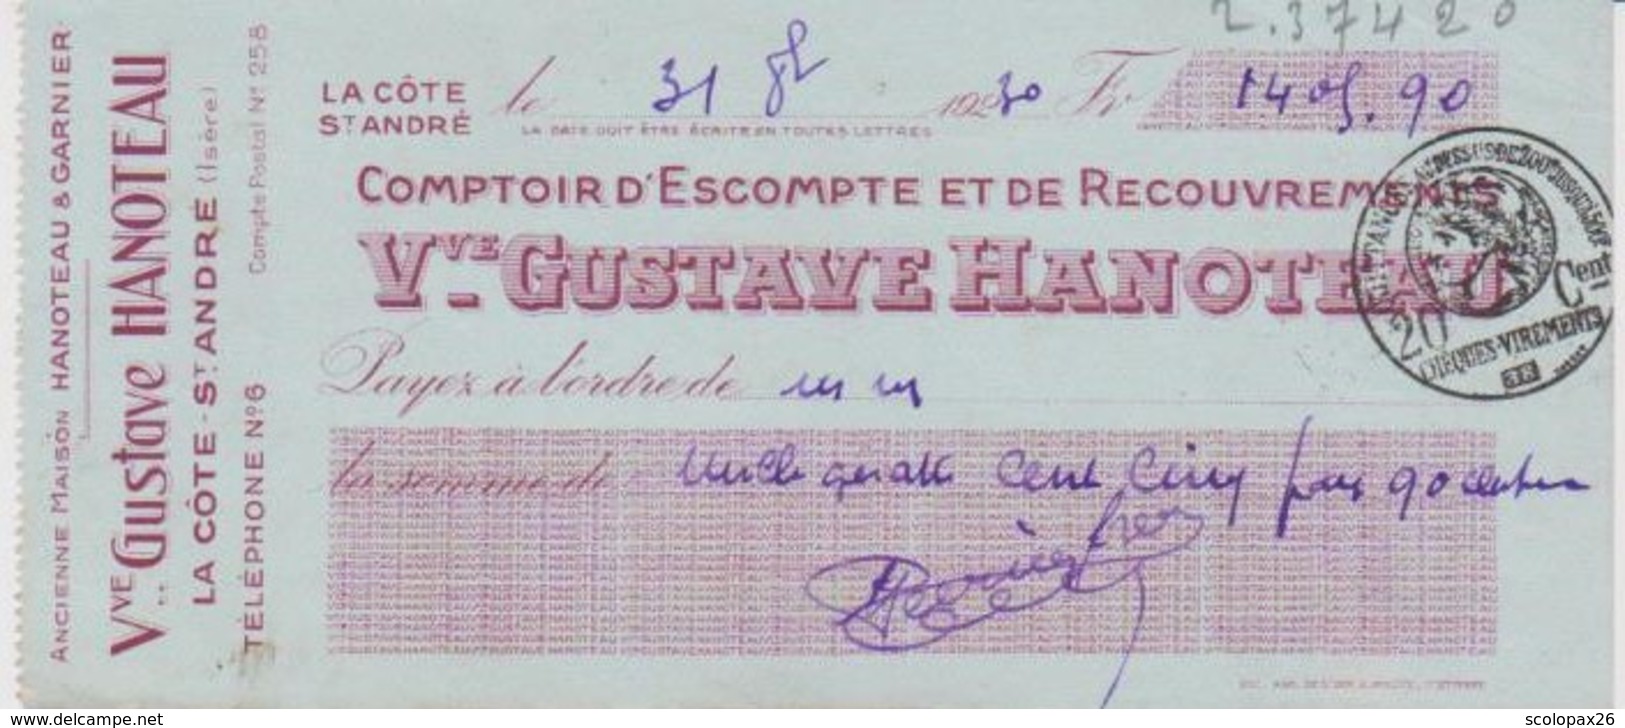 Chèque Banque Gustave Hanoteau La Côte Saint André (Isère) De 1930 Cachet Quittance 20 Cts - Cheques & Traverler's Cheques